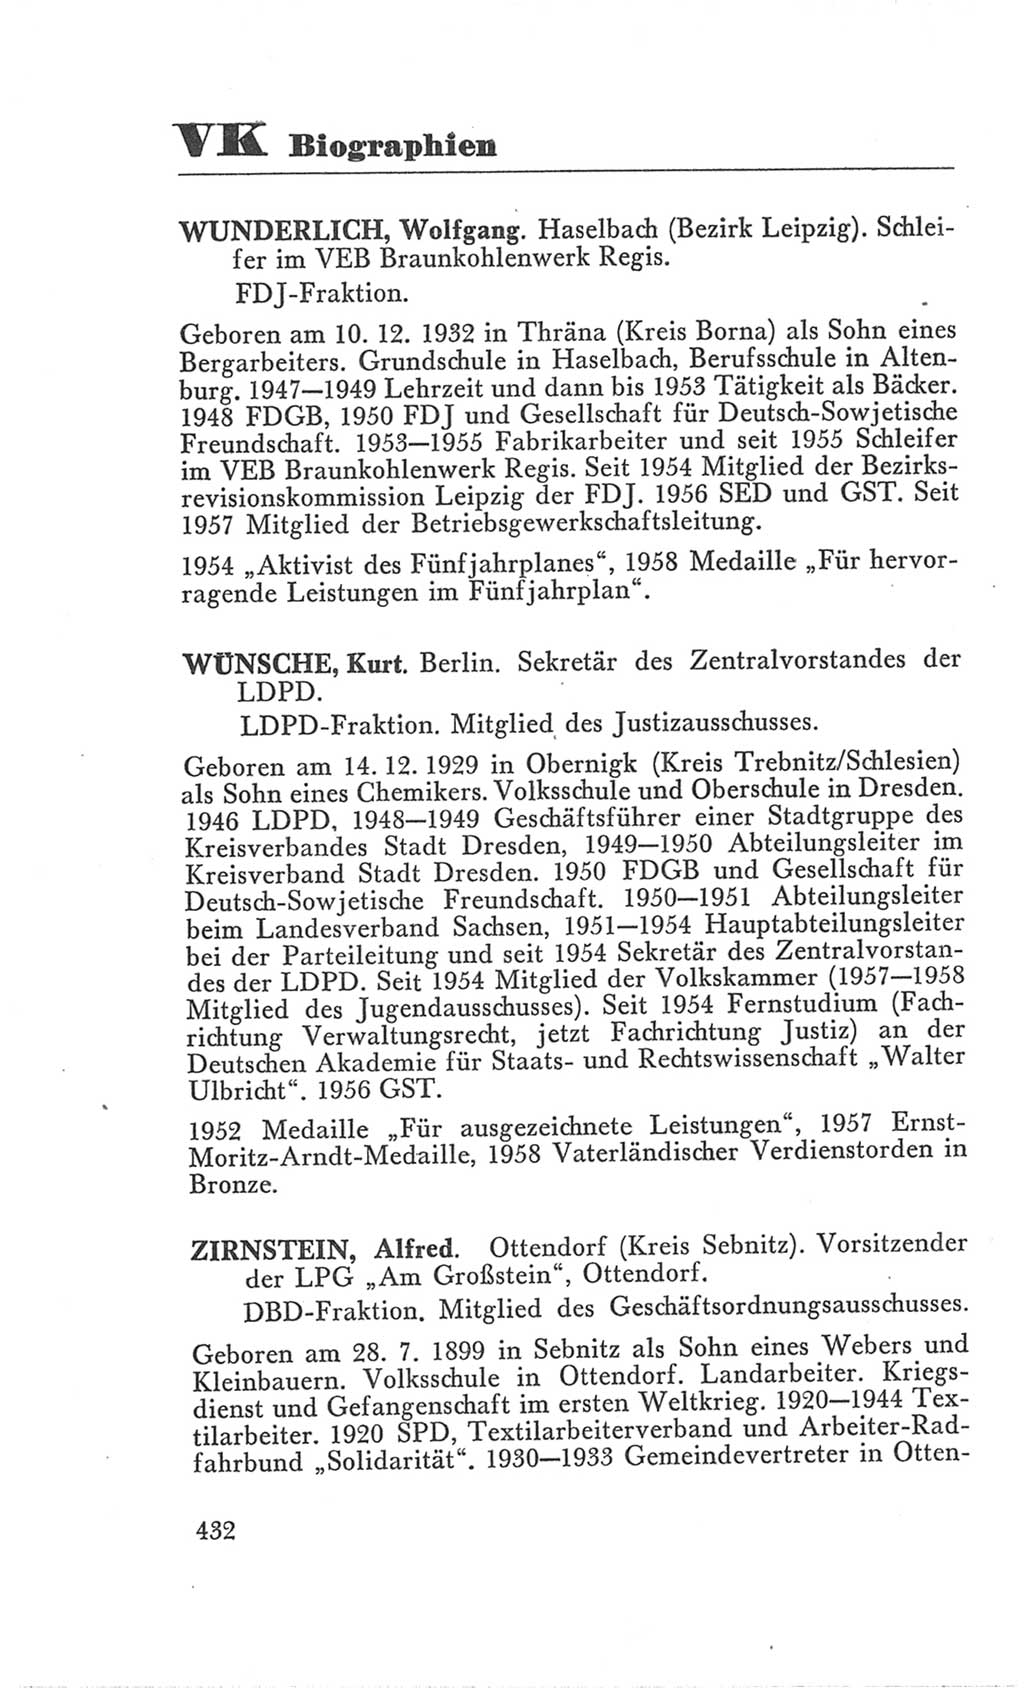 Handbuch der Volkskammer (VK) der Deutschen Demokratischen Republik (DDR), 3. Wahlperiode 1958-1963, Seite 432 (Hdb. VK. DDR 3. WP. 1958-1963, S. 432)